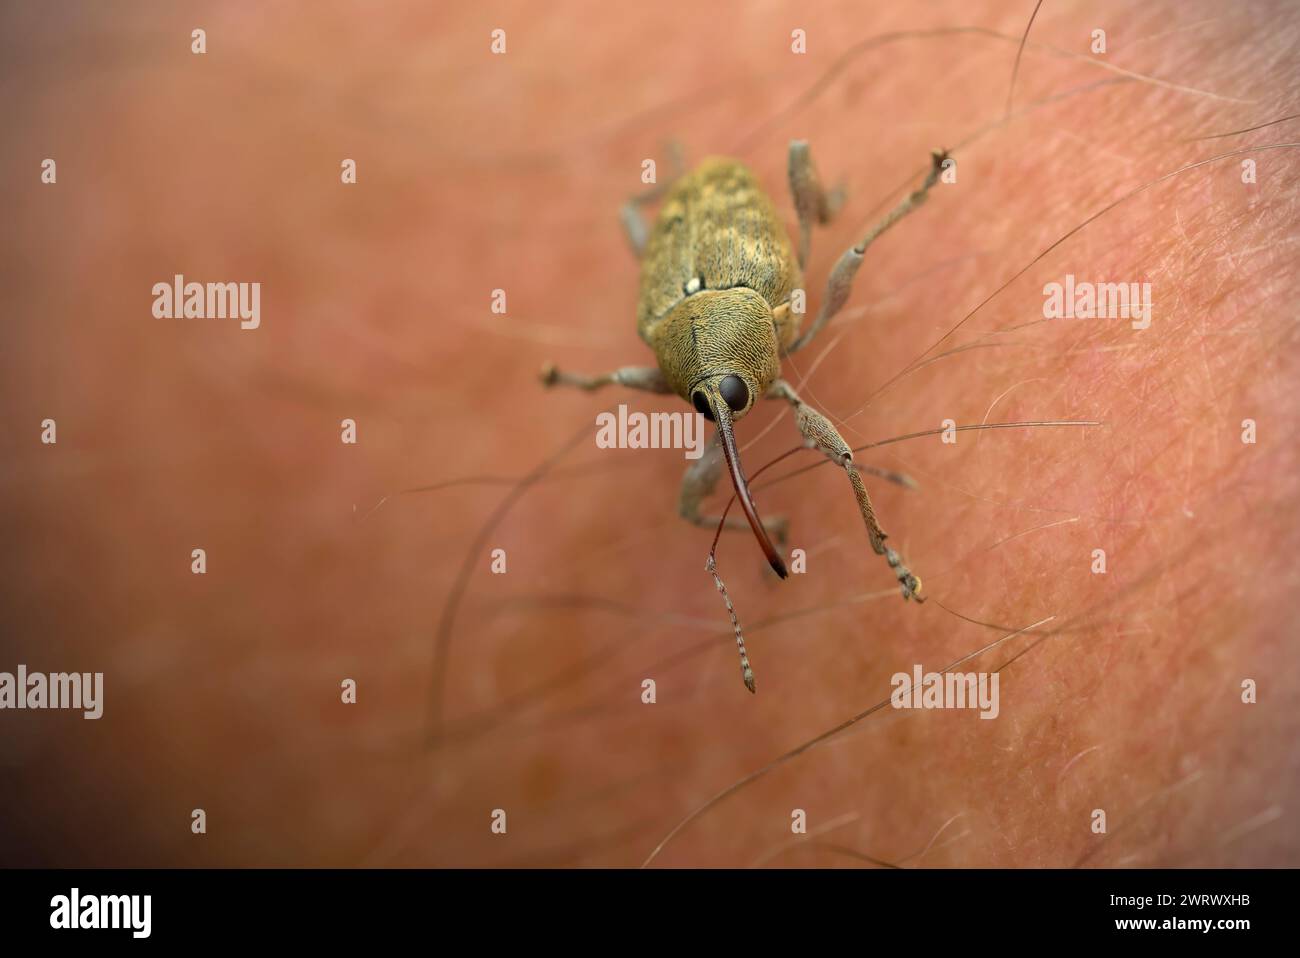 Single Snout Weevil (Curculio glandium) sur peau humaine, macro photographie d'insectes, nature, biodiversité Banque D'Images